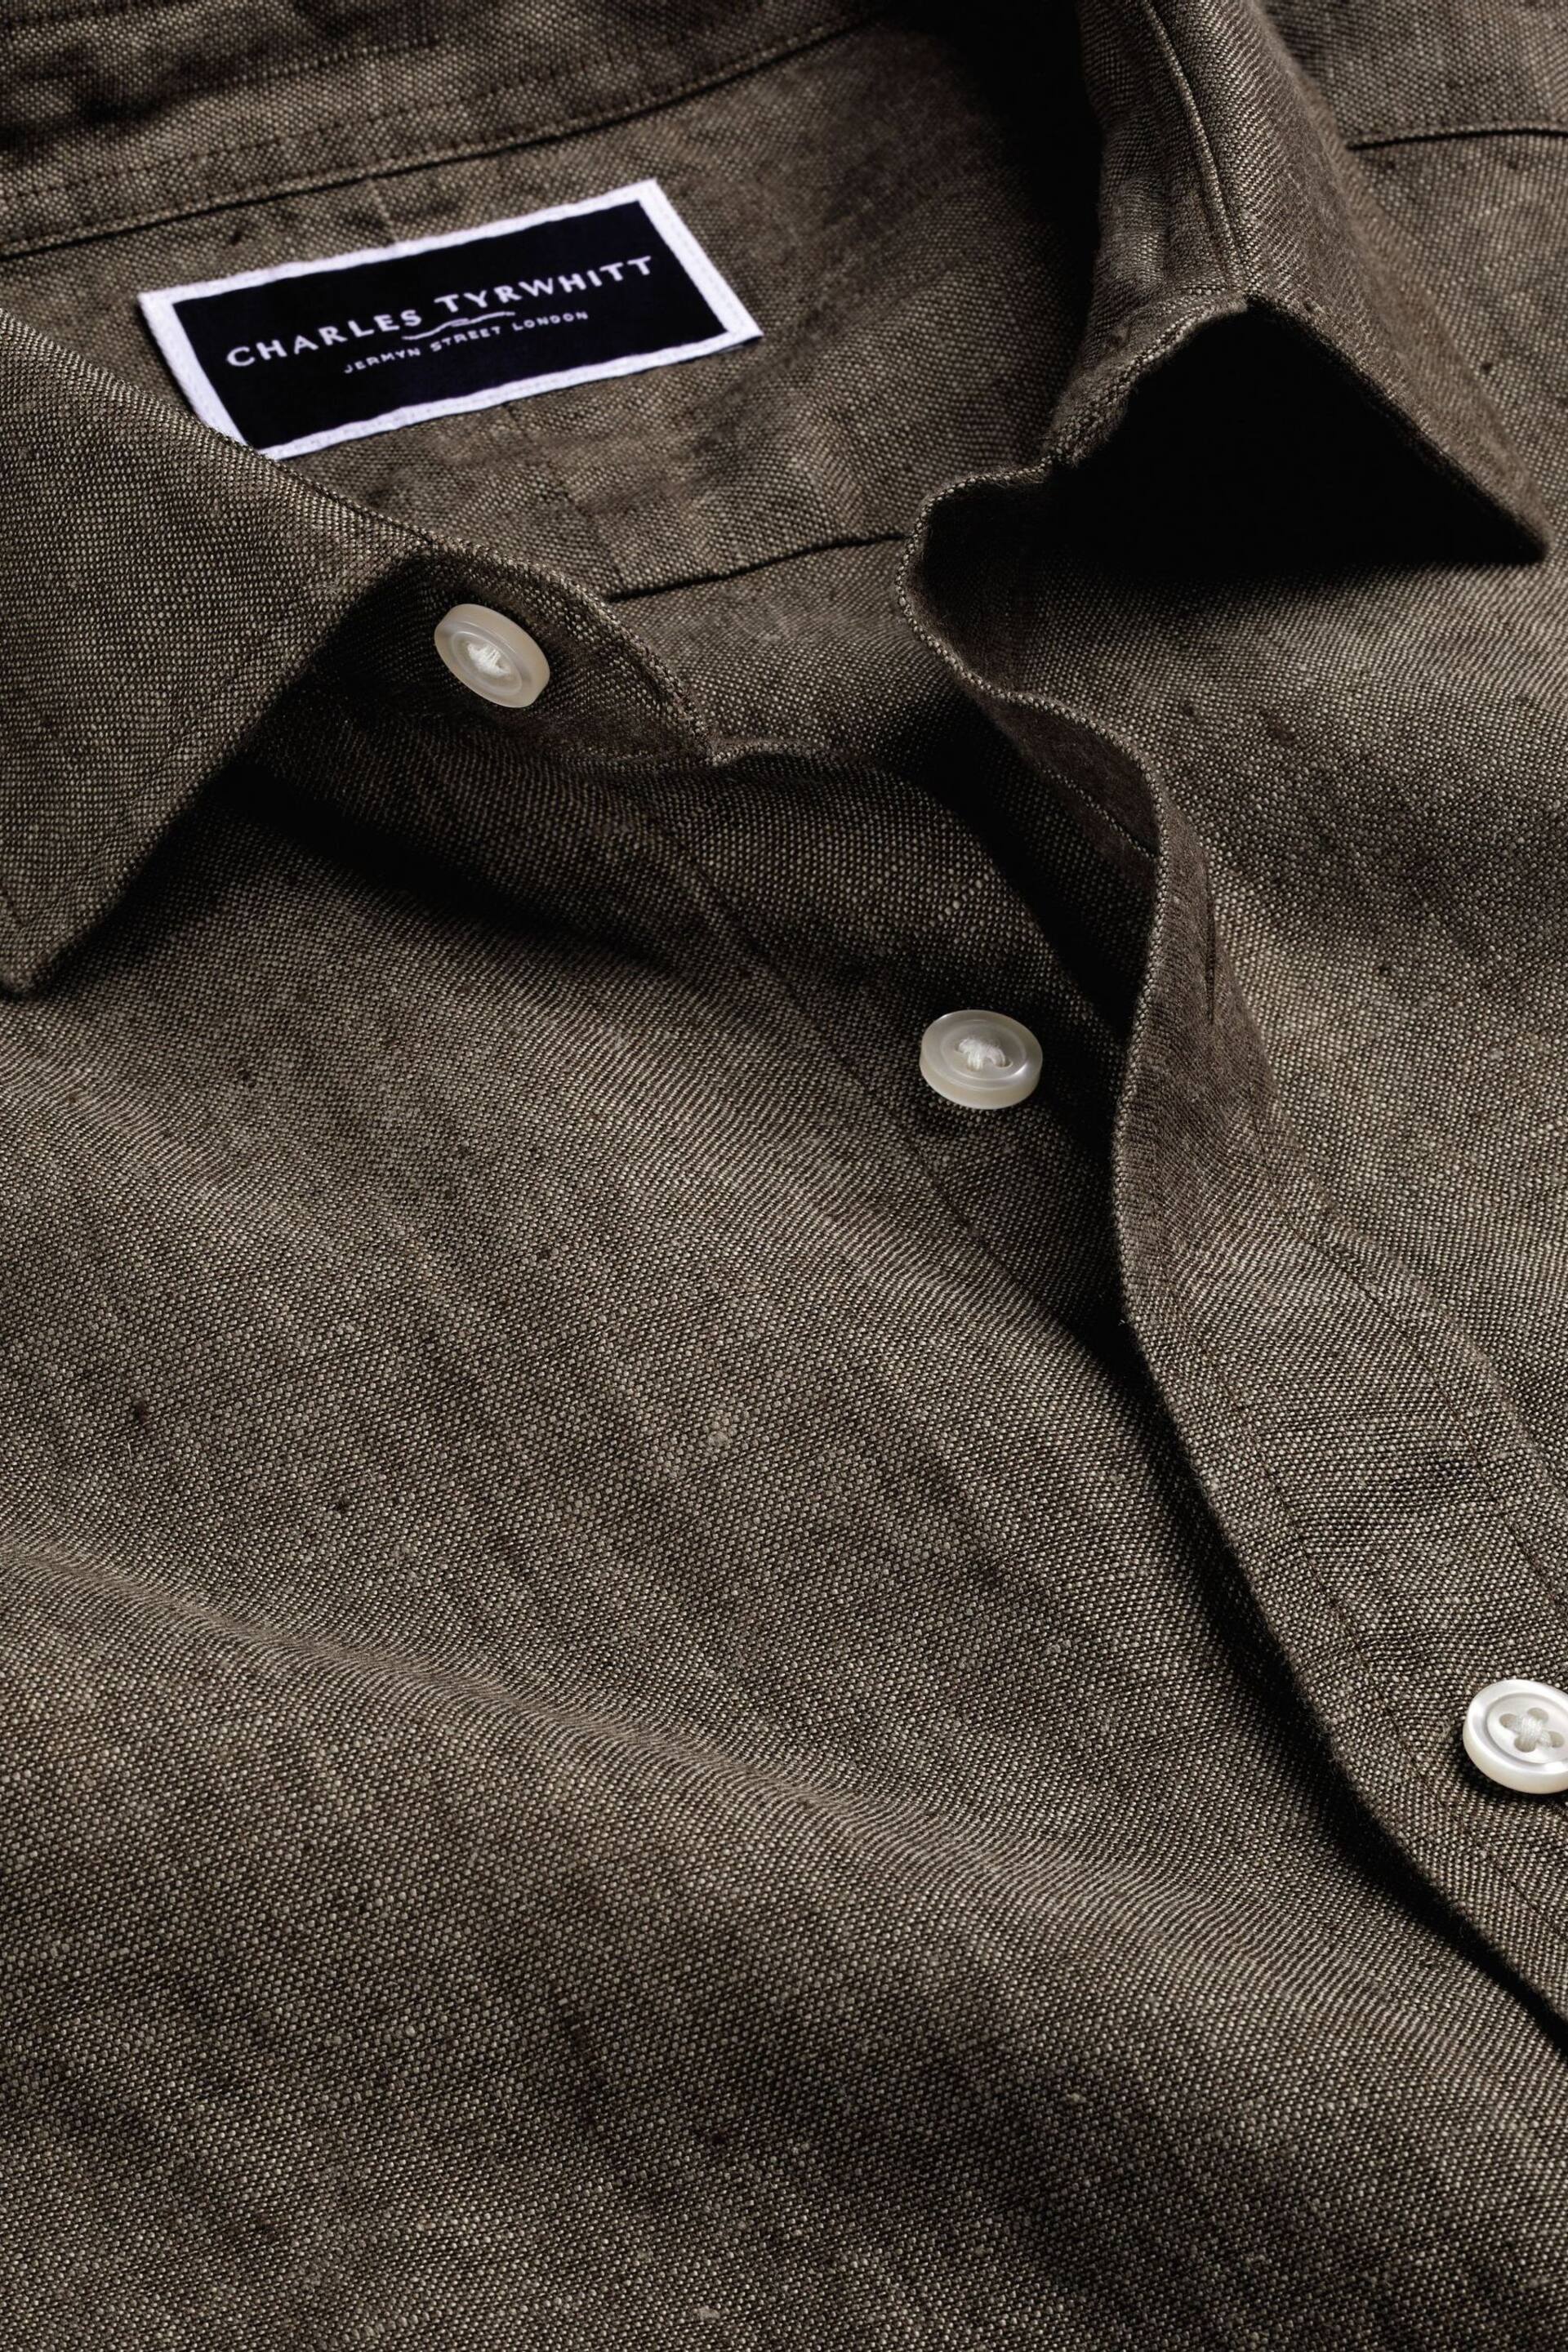 Charles Tyrwhitt Brown Slim Fit Plain Short Sleeve Pure Linen Full Sleeves Shirt - Image 6 of 6